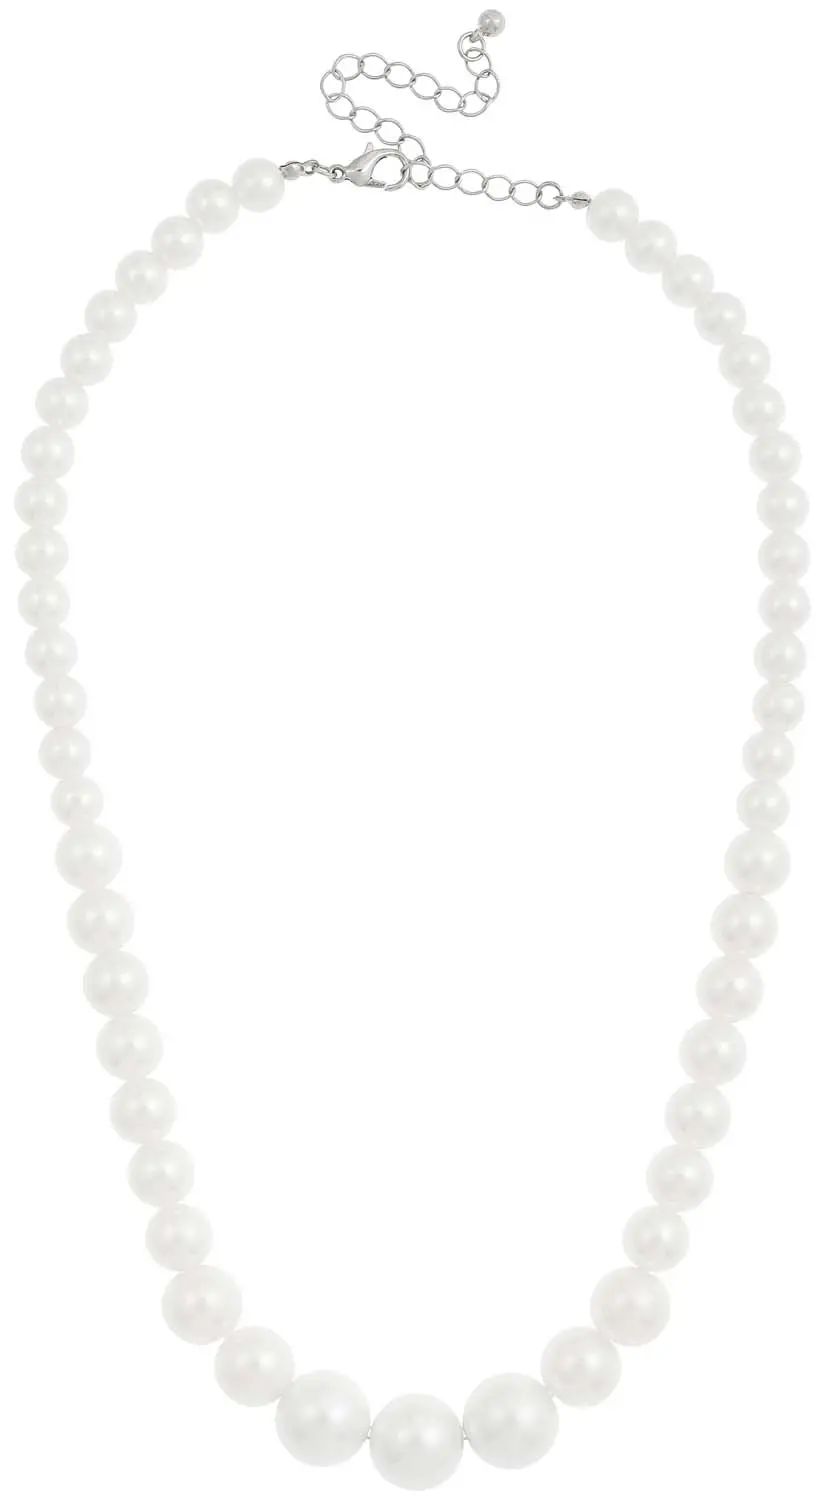 Collar - Shining Pearls